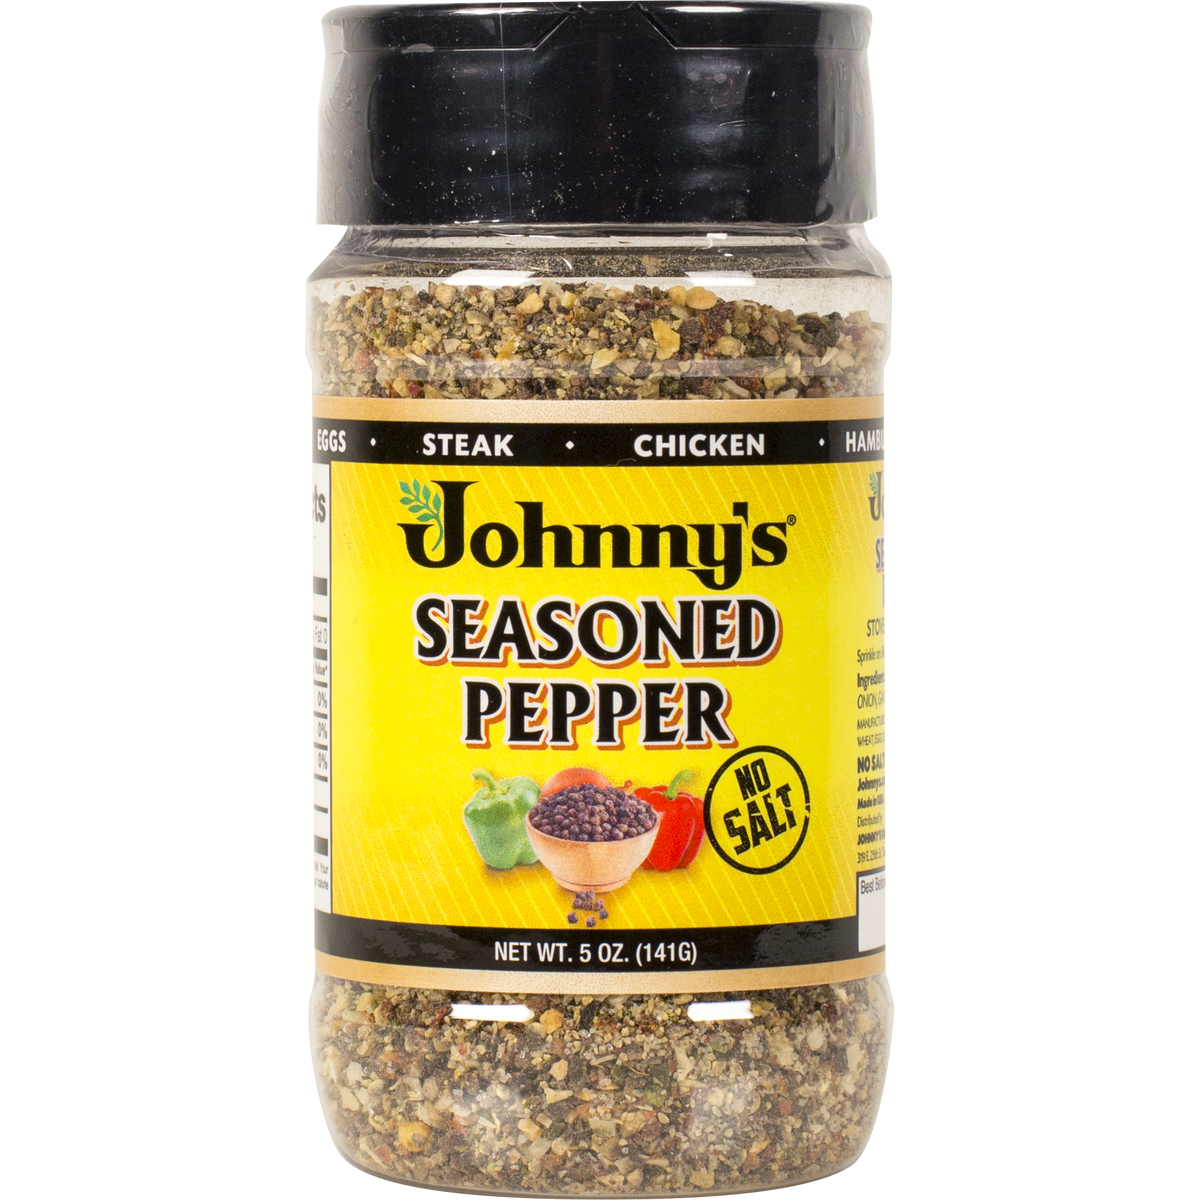 Seasoned Pepper